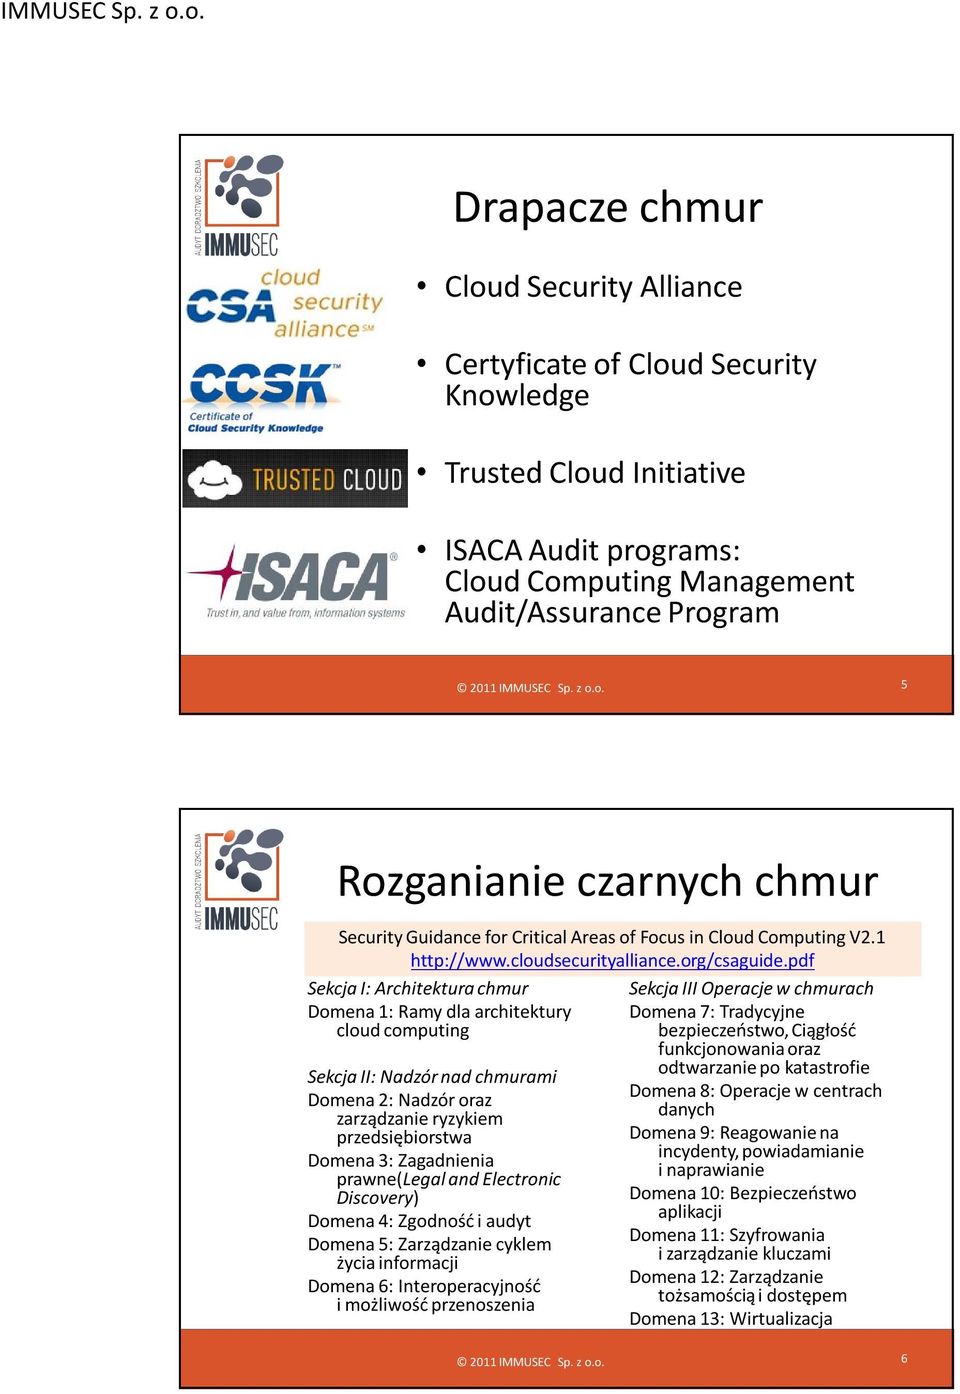 pdf Sekcja I: Architektura chmur Domena 1: Ramy dla architektury cloud computing Sekcja II: Nadzór nad chmurami Domena 2: Nadzór oraz zarządzanie ryzykiem przedsiębiorstwa Domena 3: Zagadnienia